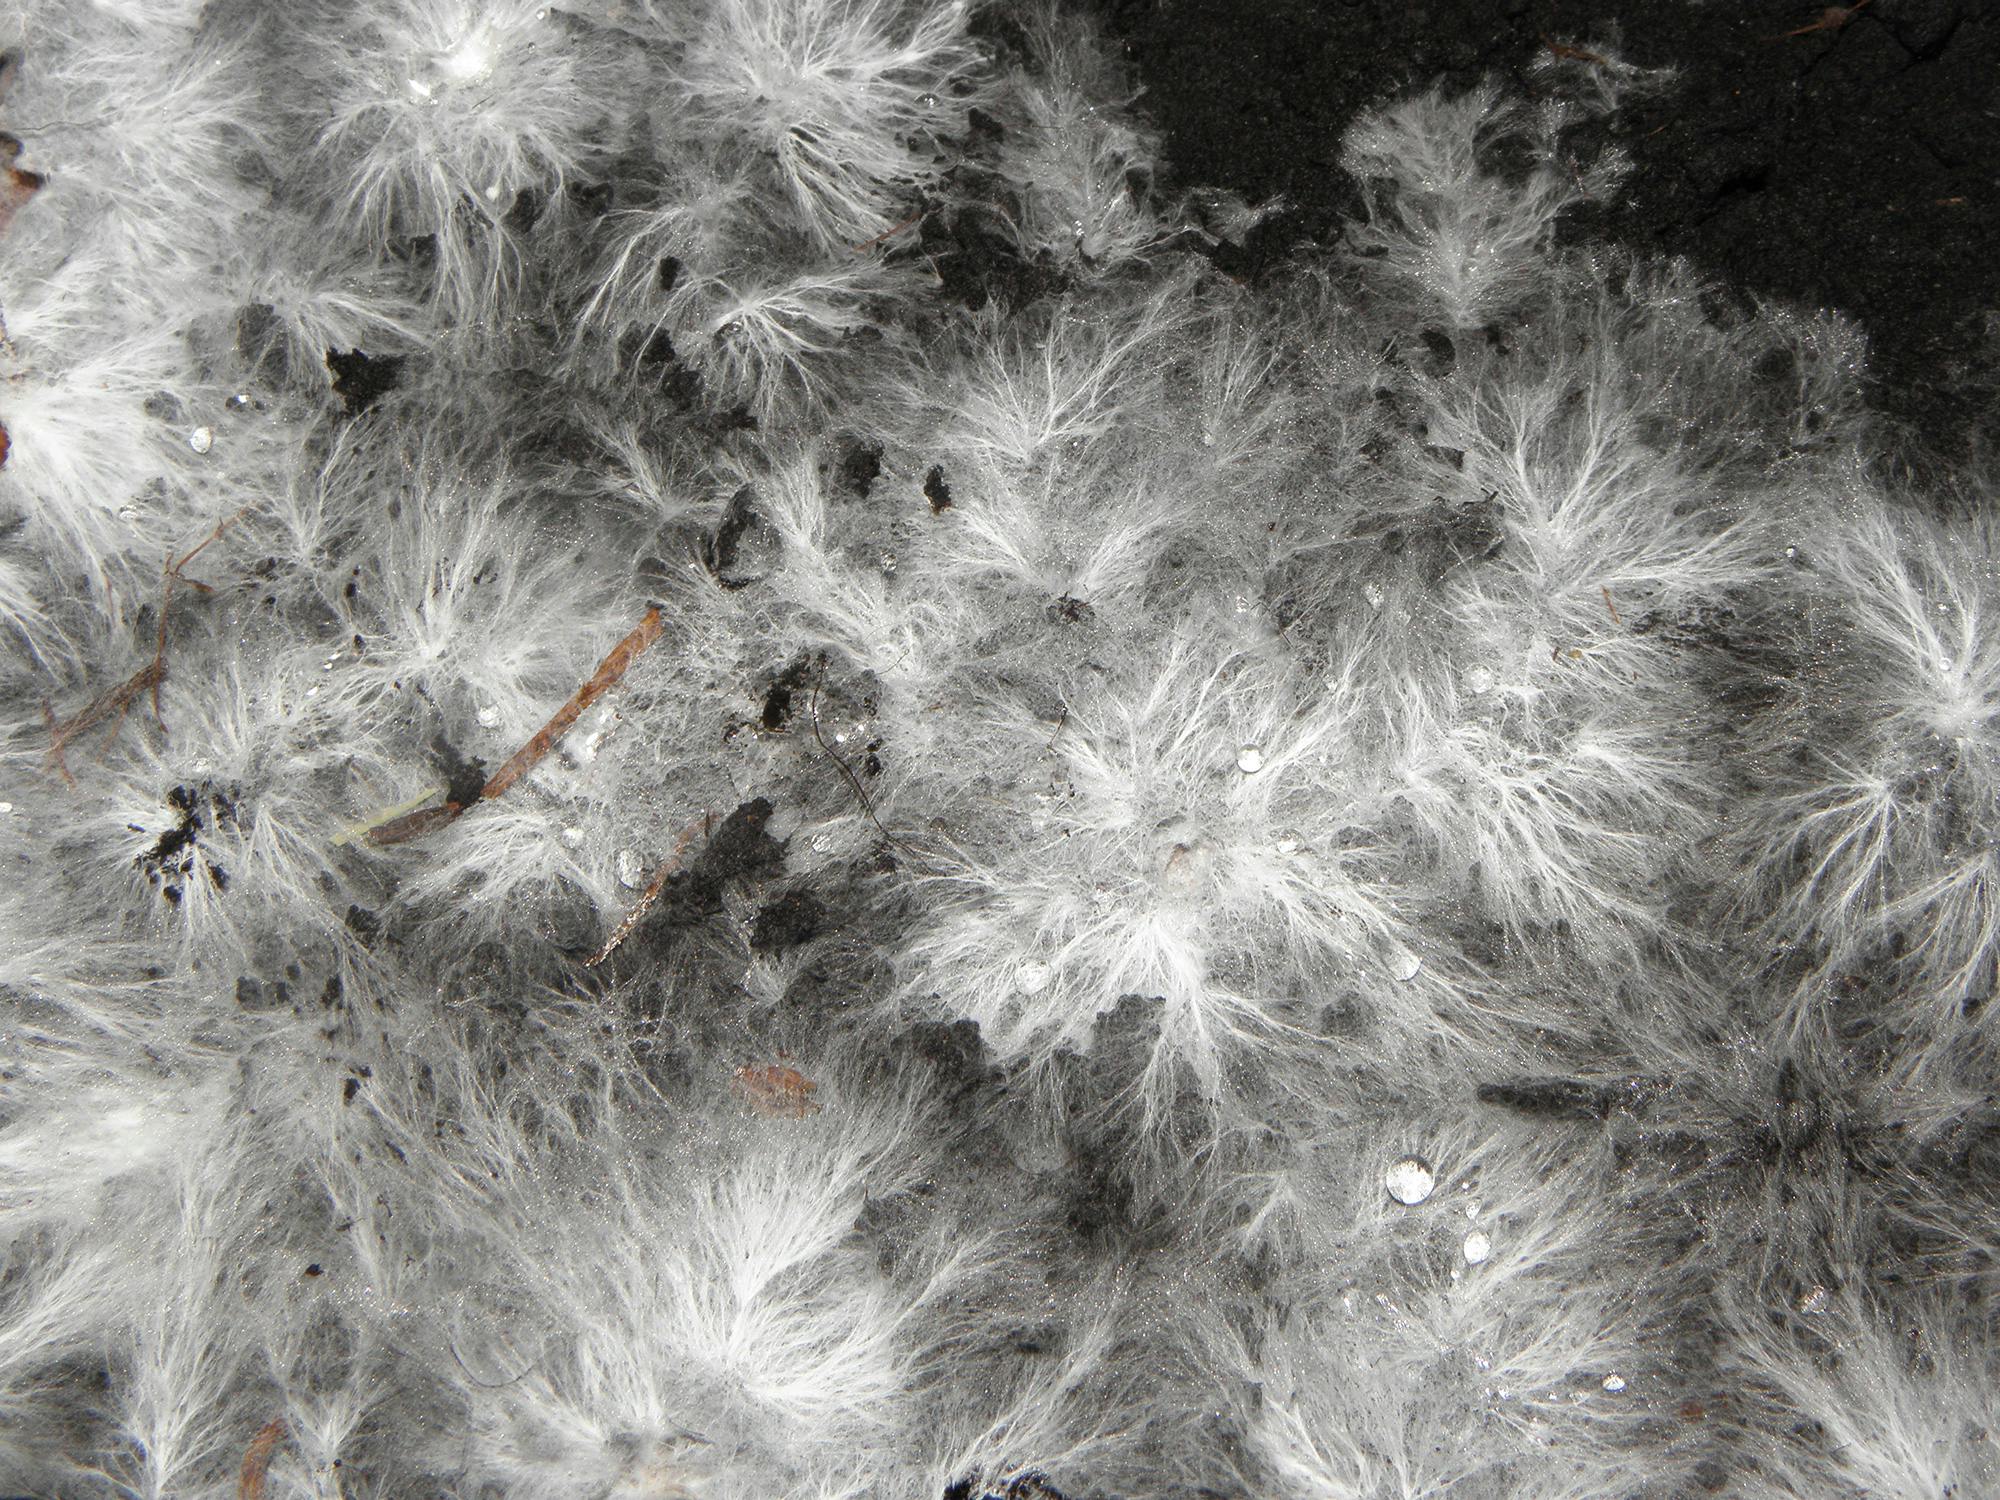 Mycelium